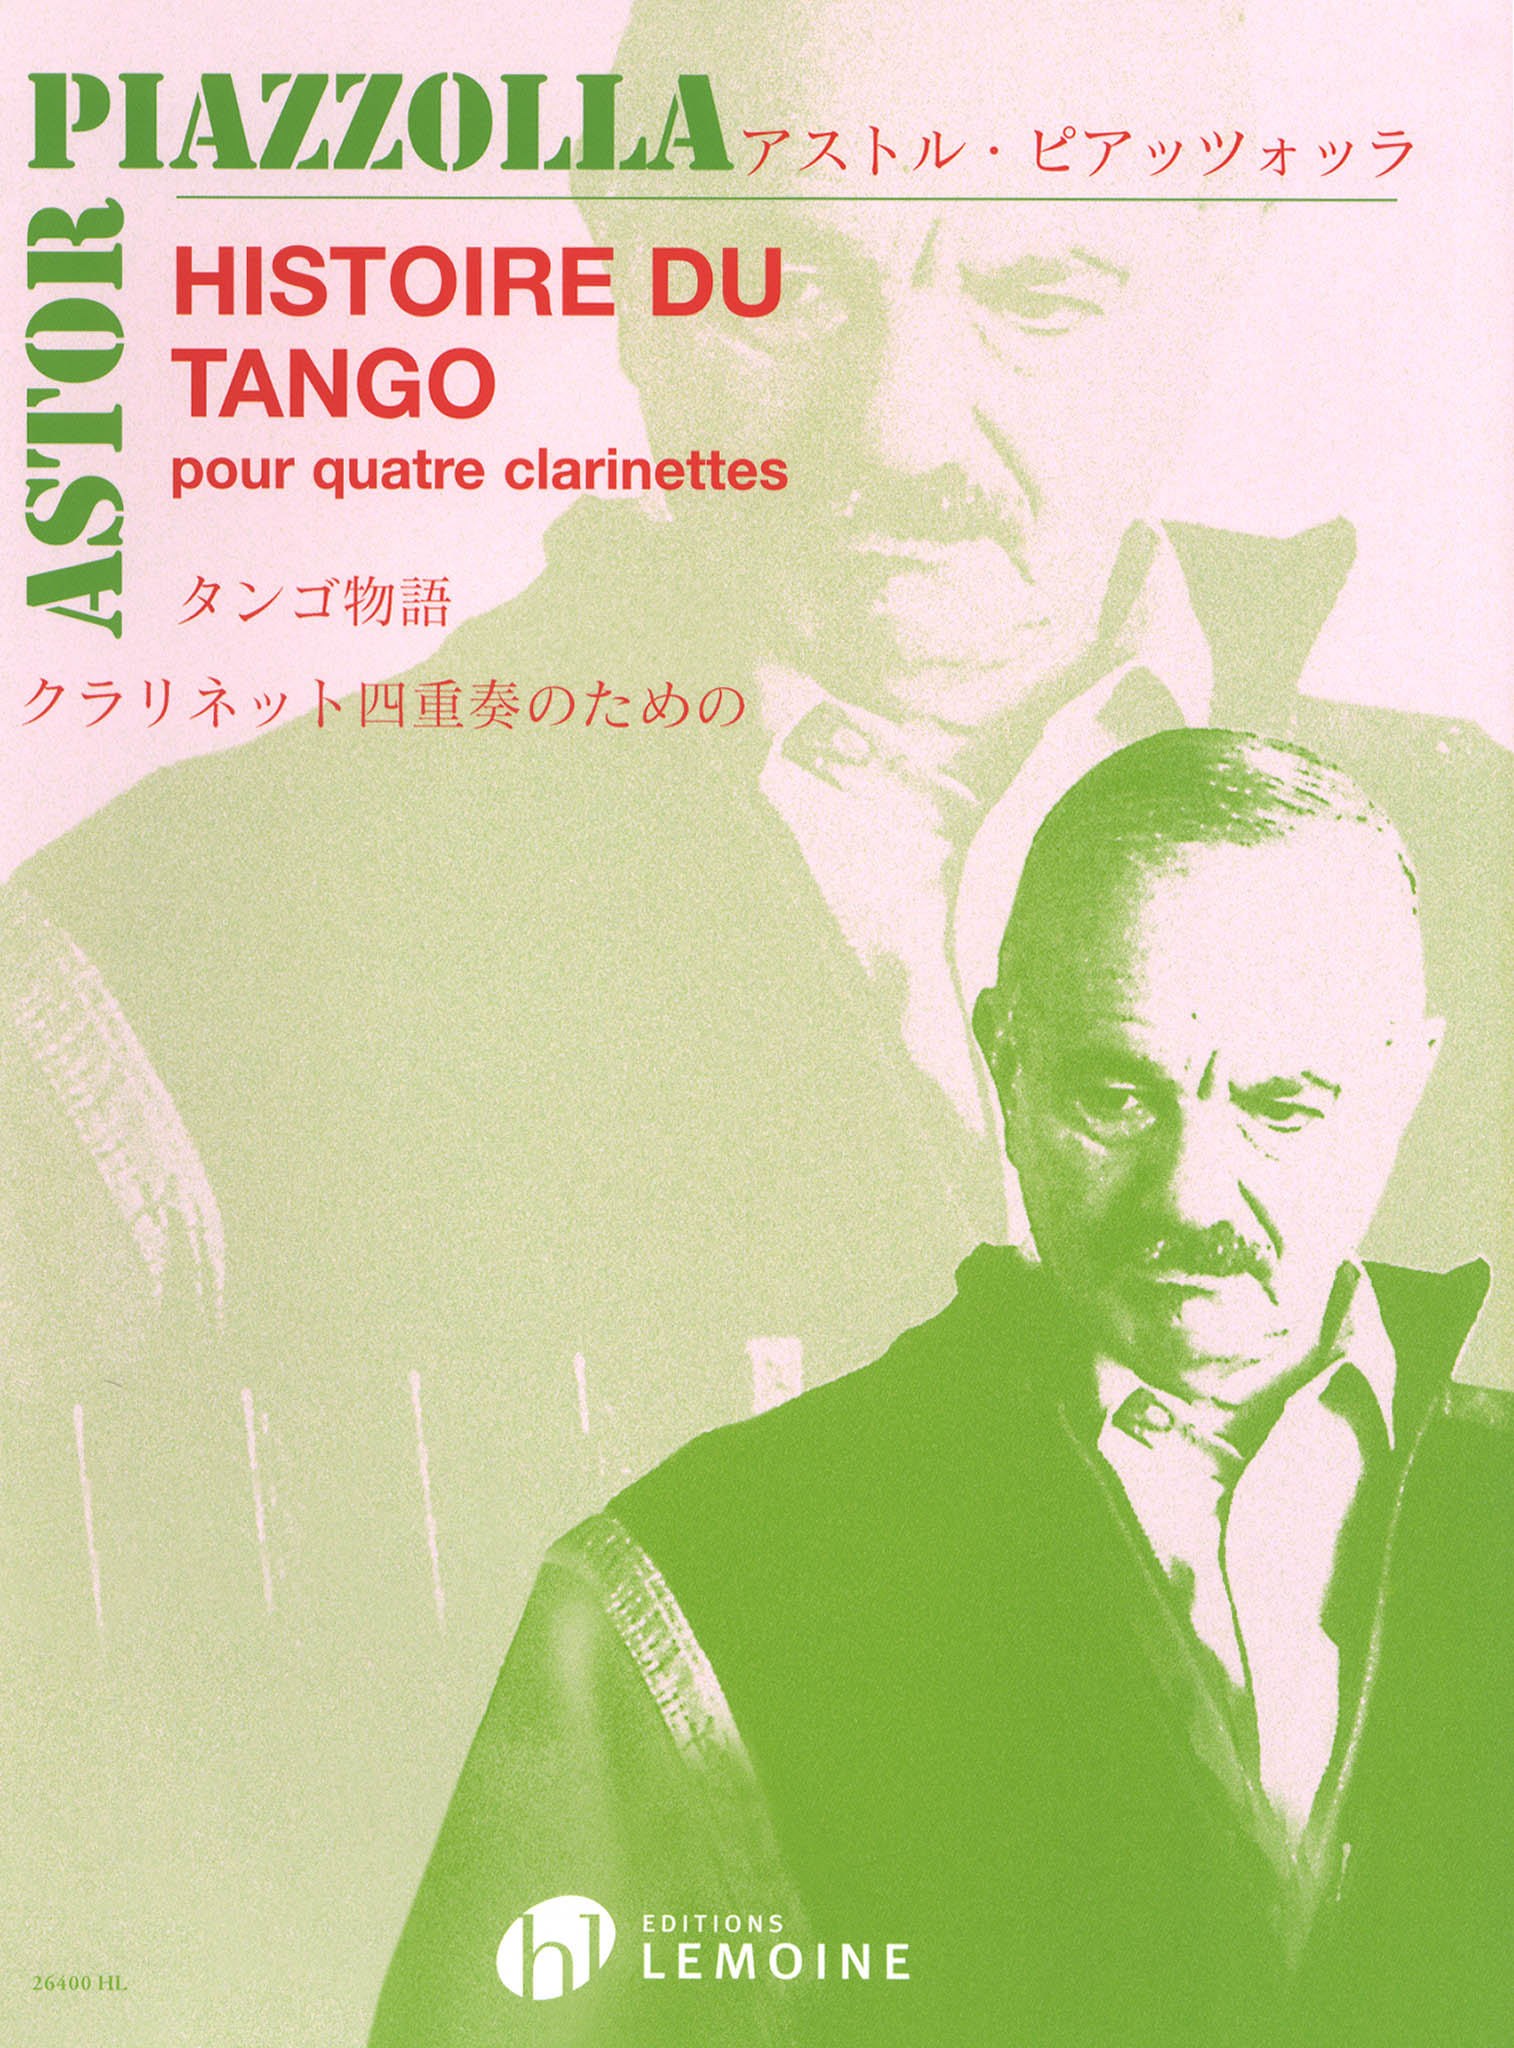 Piazzolla Histoire du Tango clarinet quartet arrangement cover